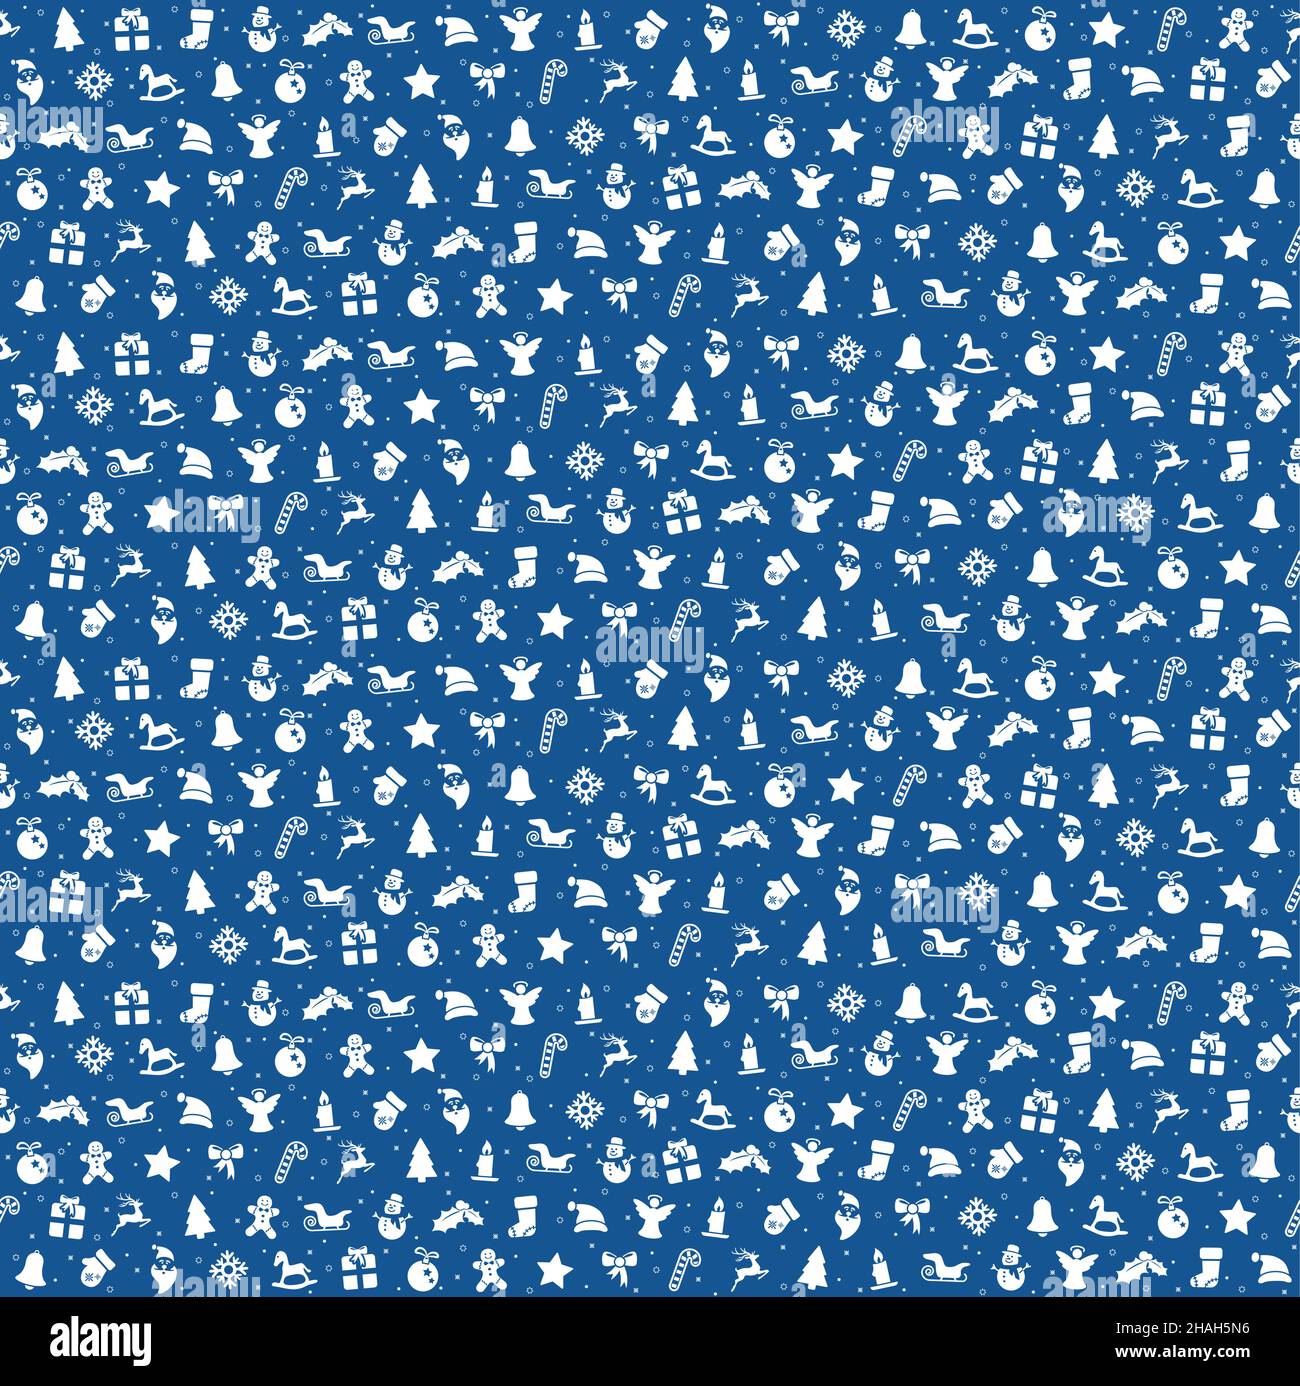 Noël arrière-plan transparent de couleur bleue se compose d'icônes de Noël typique comme santa claus, bougie, snowfalke, arbre, Gingerbread Man, les étoiles Illustration de Vecteur